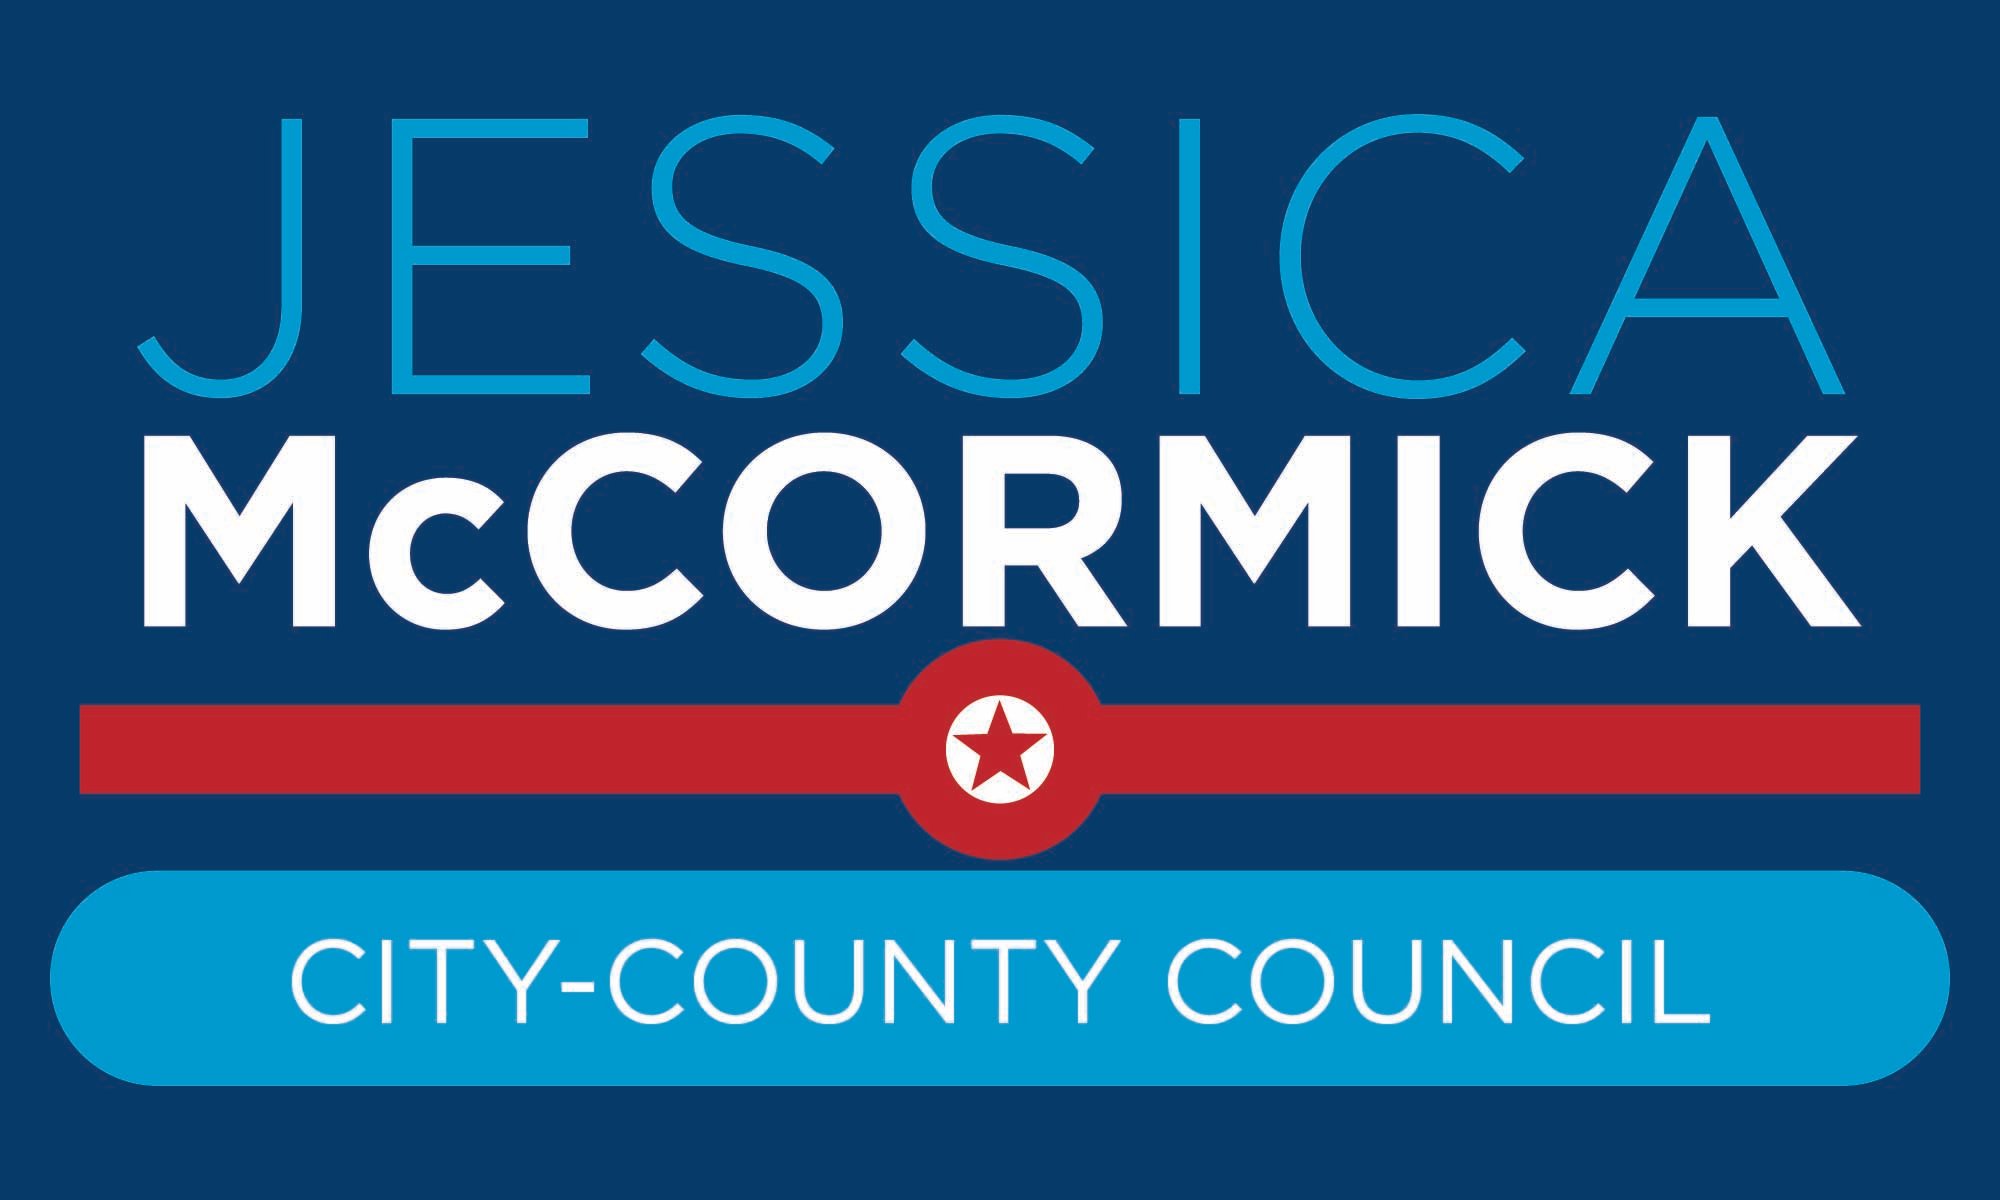 Councillor Jessica McCormick